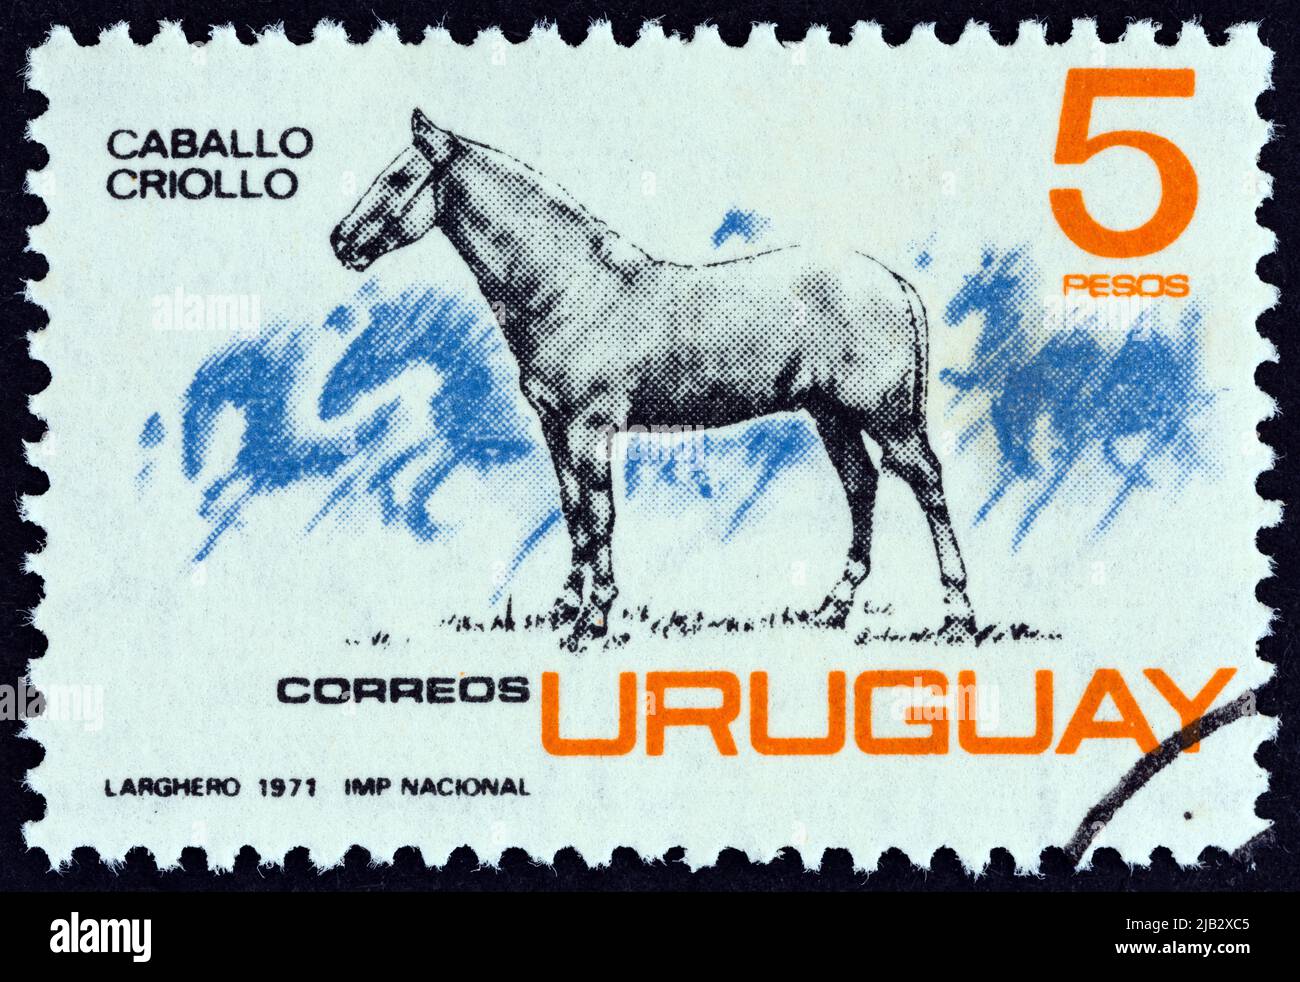 URUGUAY - UM 1971: Eine in Uruguay gedruckte Briefmarke zeigt Criollo-Pferd, um 1971. Stockfoto